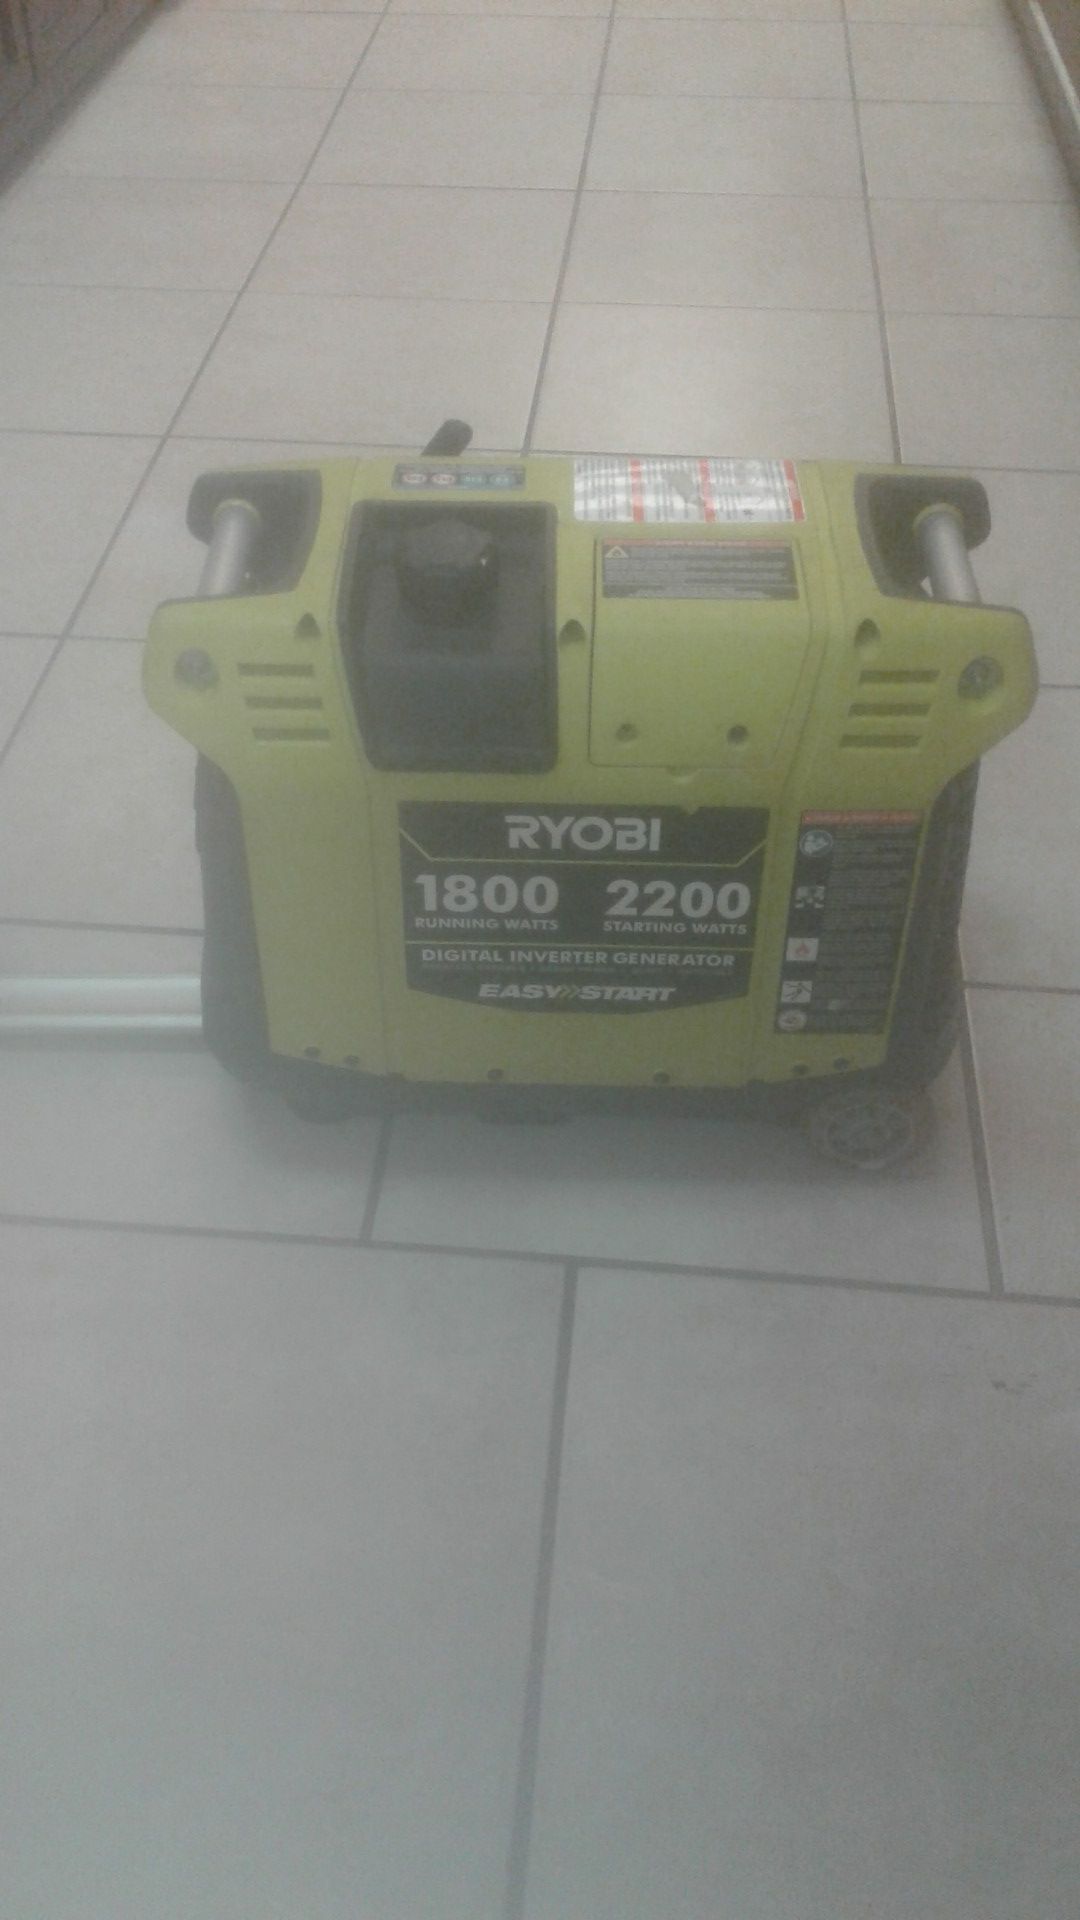 Ryobi 1800-2200 Starting Watts Digital Inverter Generator